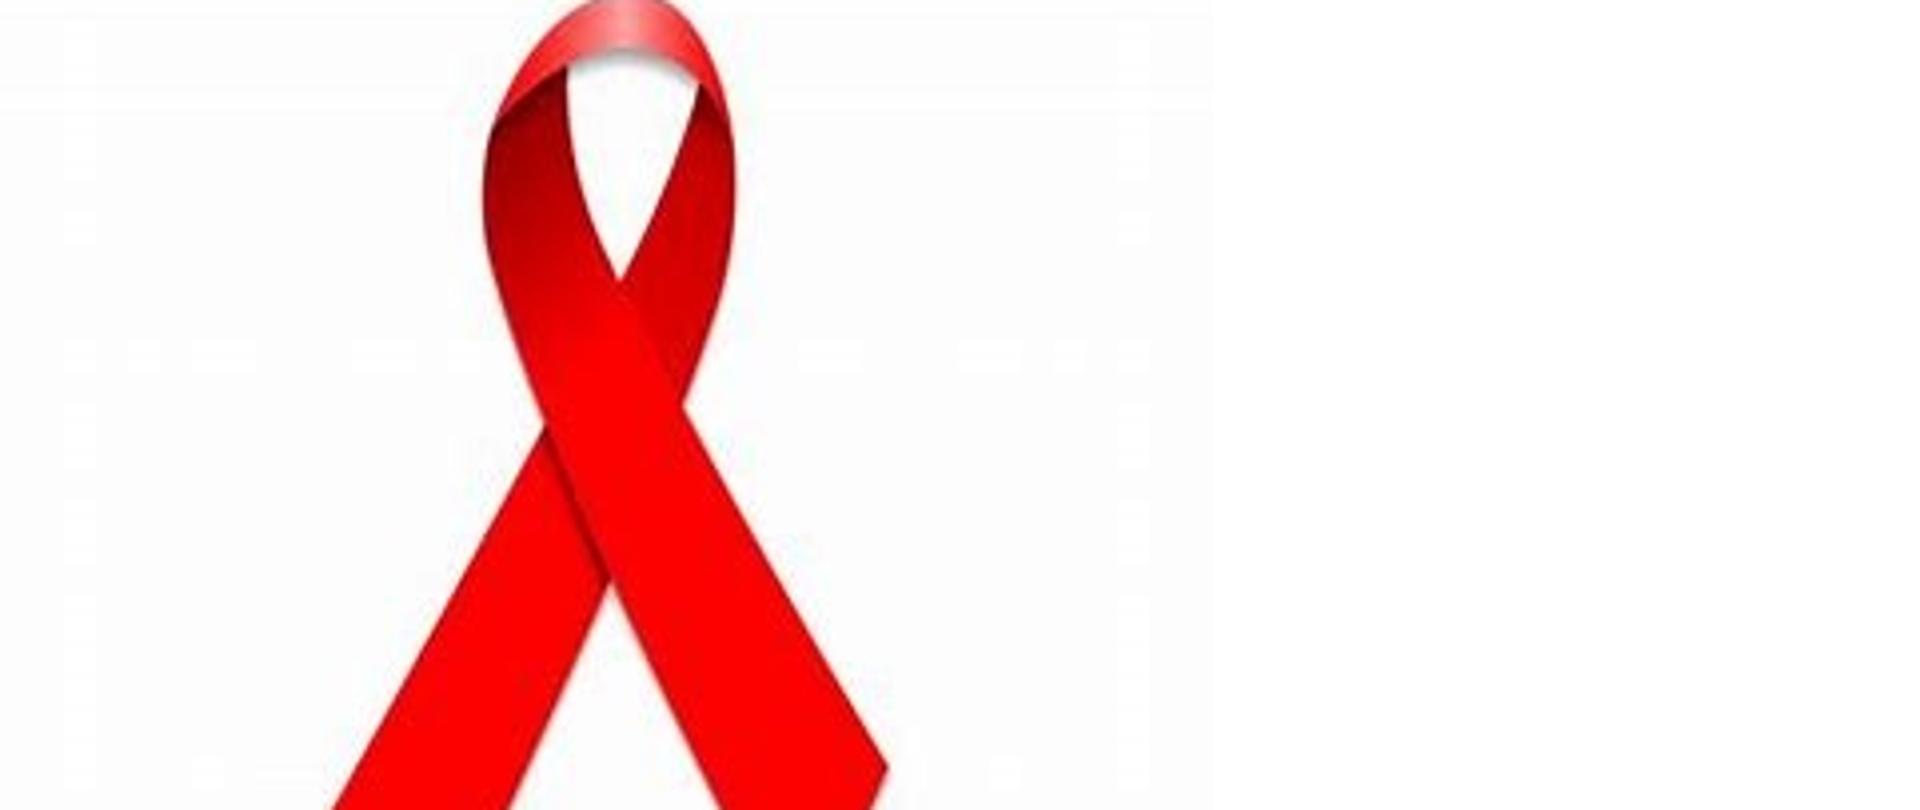 na zdjęciu czerwona kokardka - symbol solidarności z osobami żyjącymi z HIV i AIDS